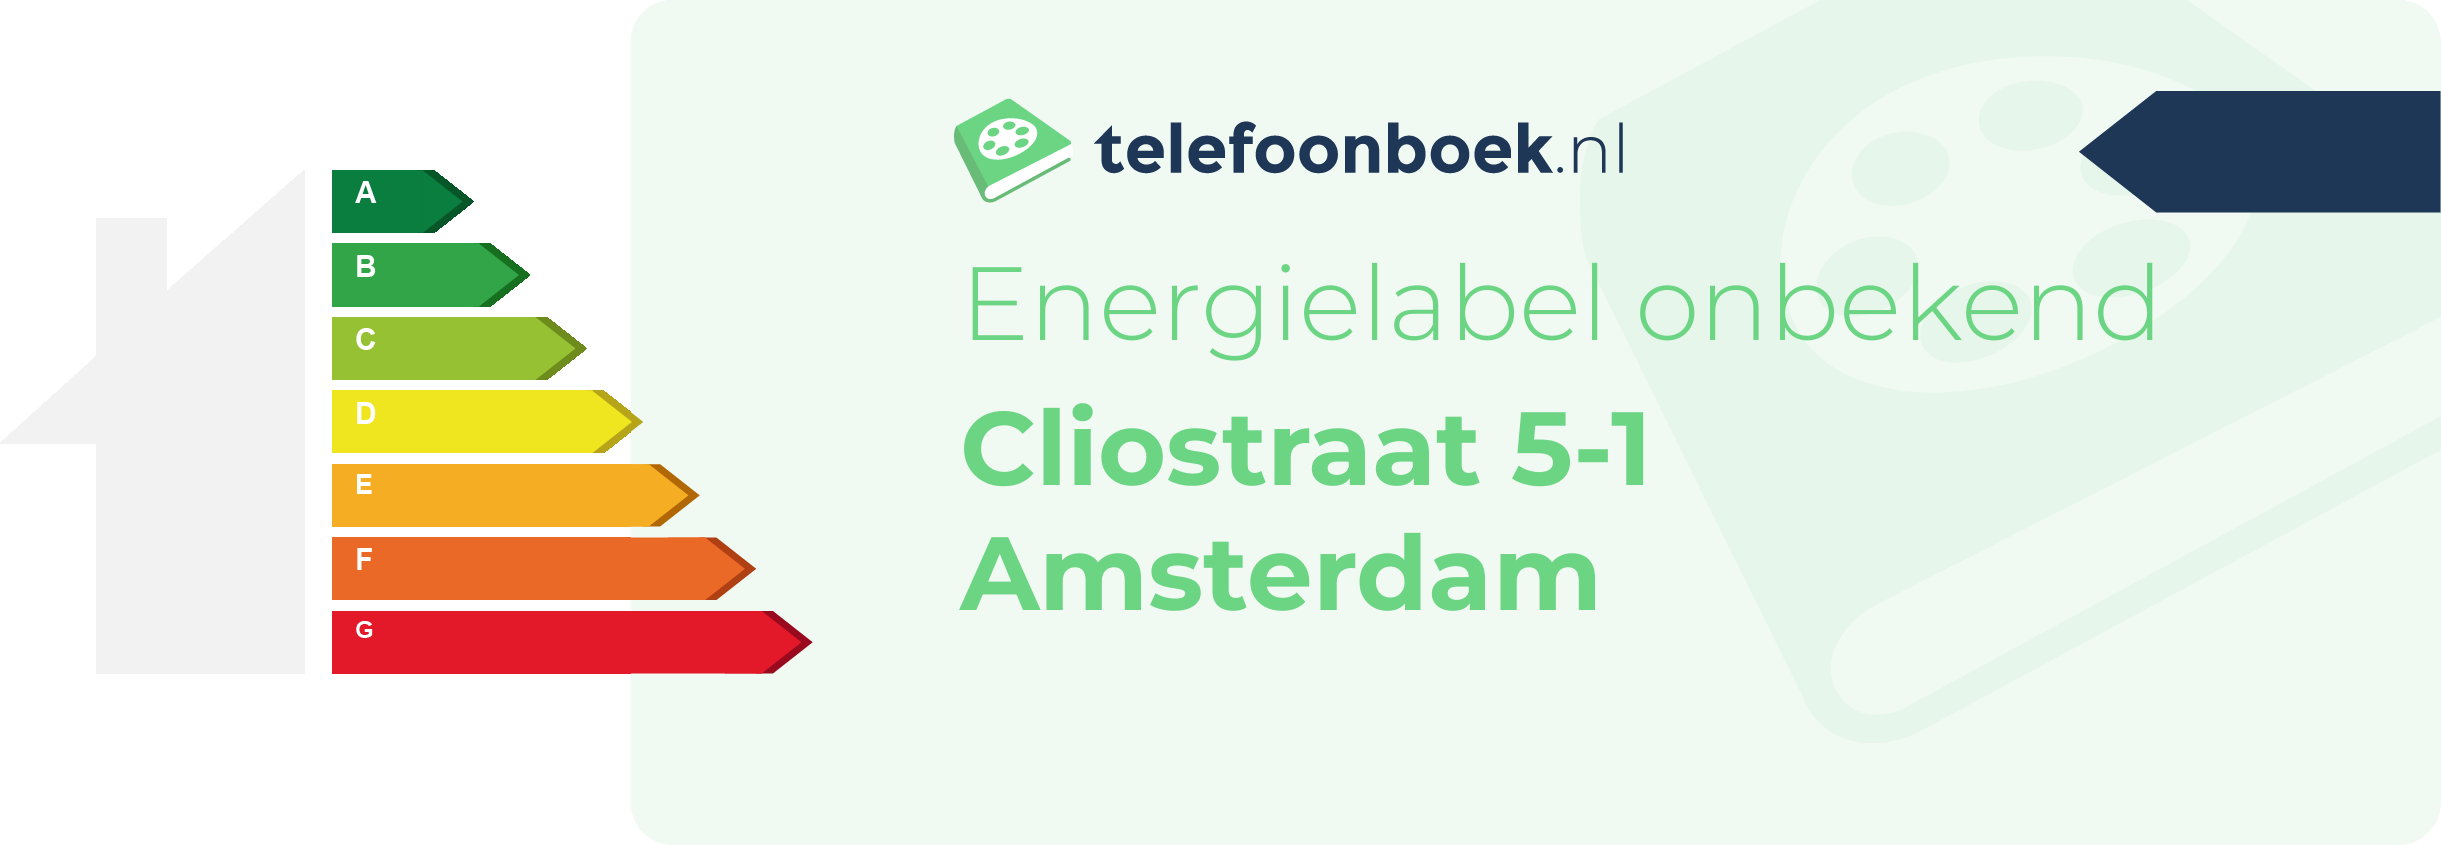 Energielabel Cliostraat 5-1 Amsterdam